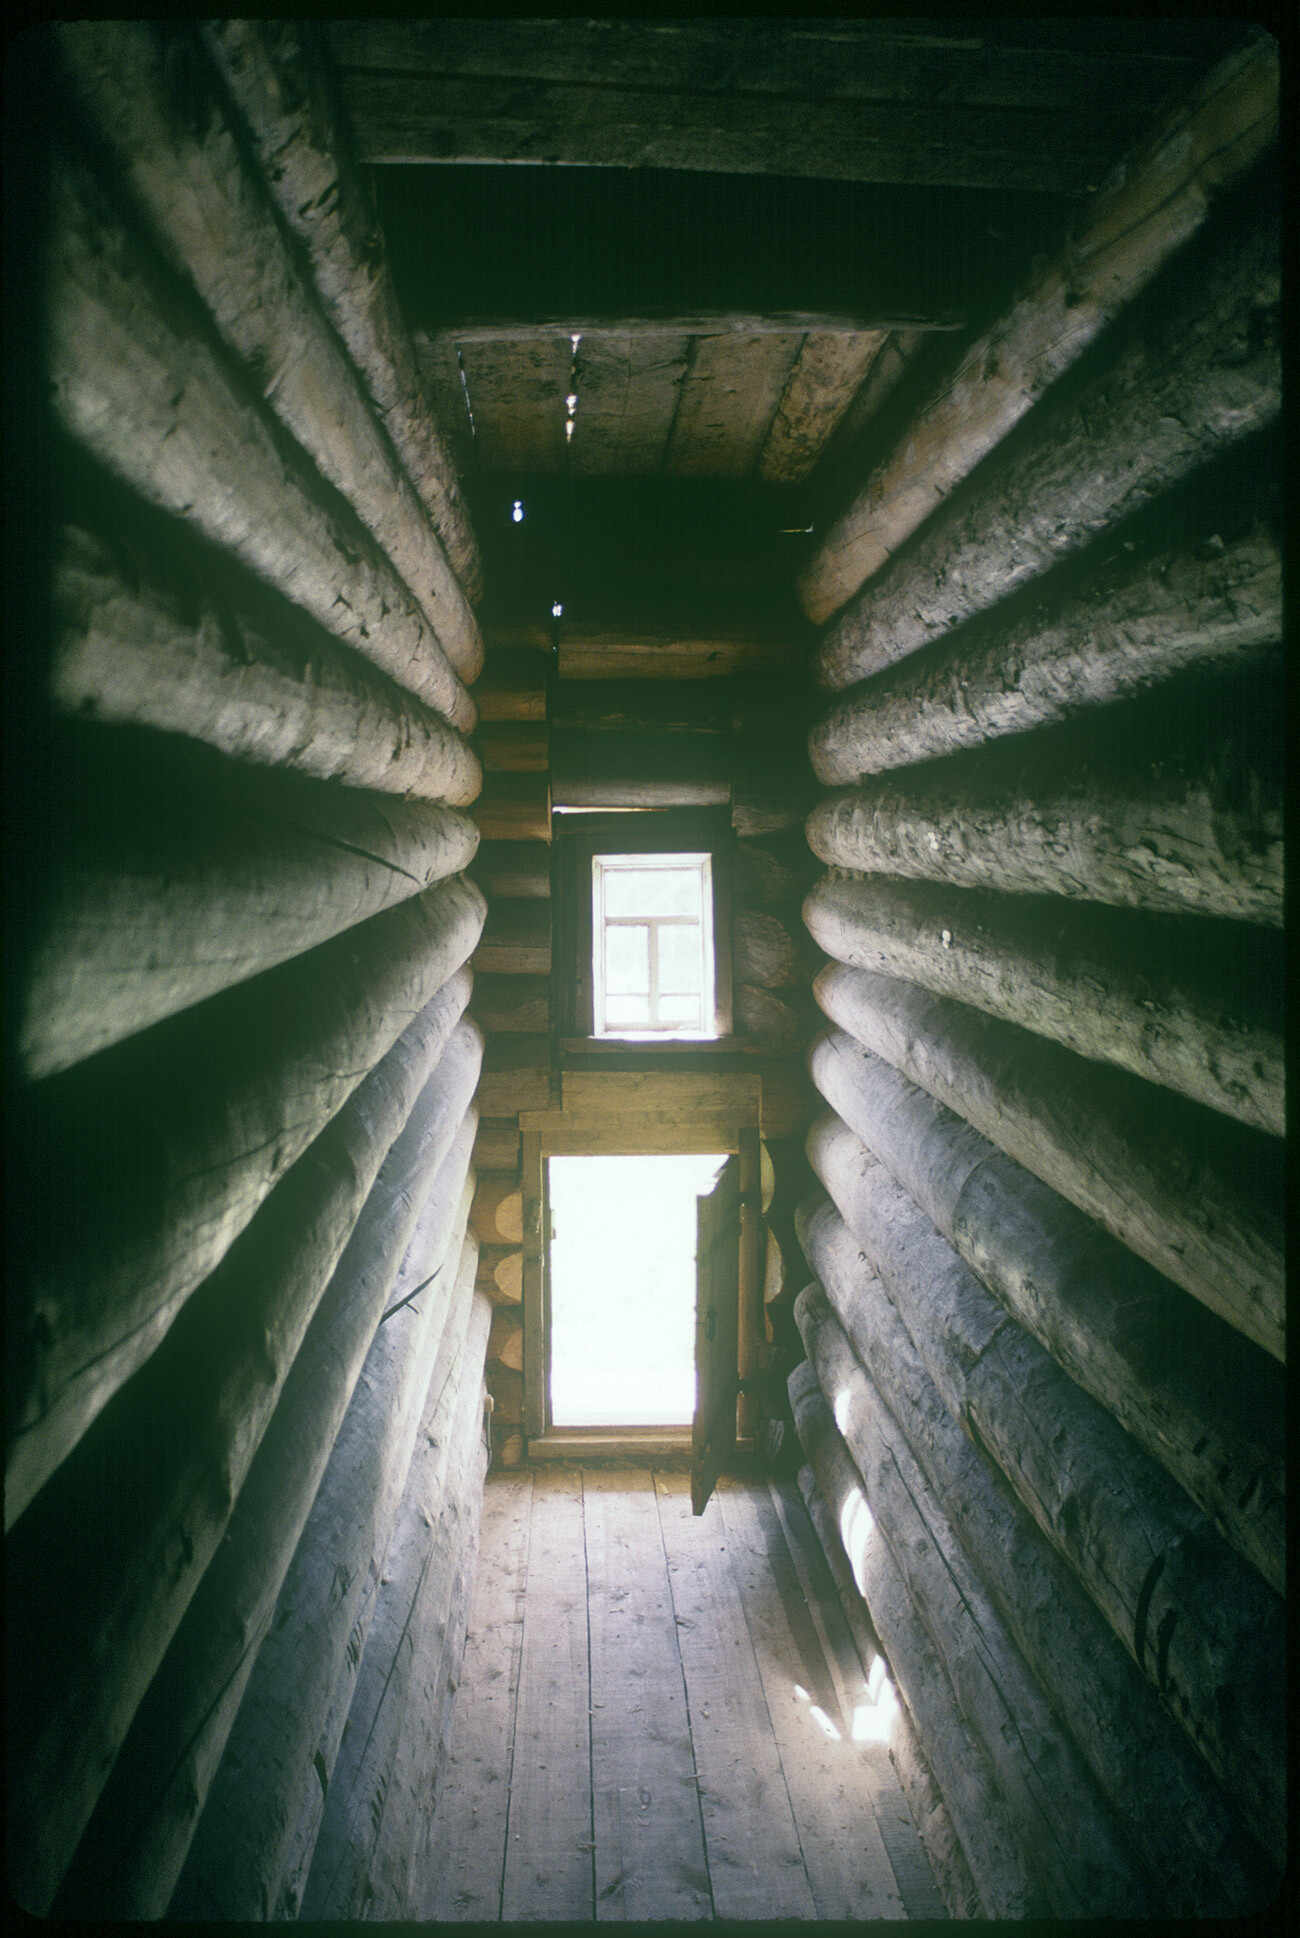 Izba d’A. I. Popova. Passage d'entrée entre deux murs de soutien s'étendant de l'avant. 11 août 1995